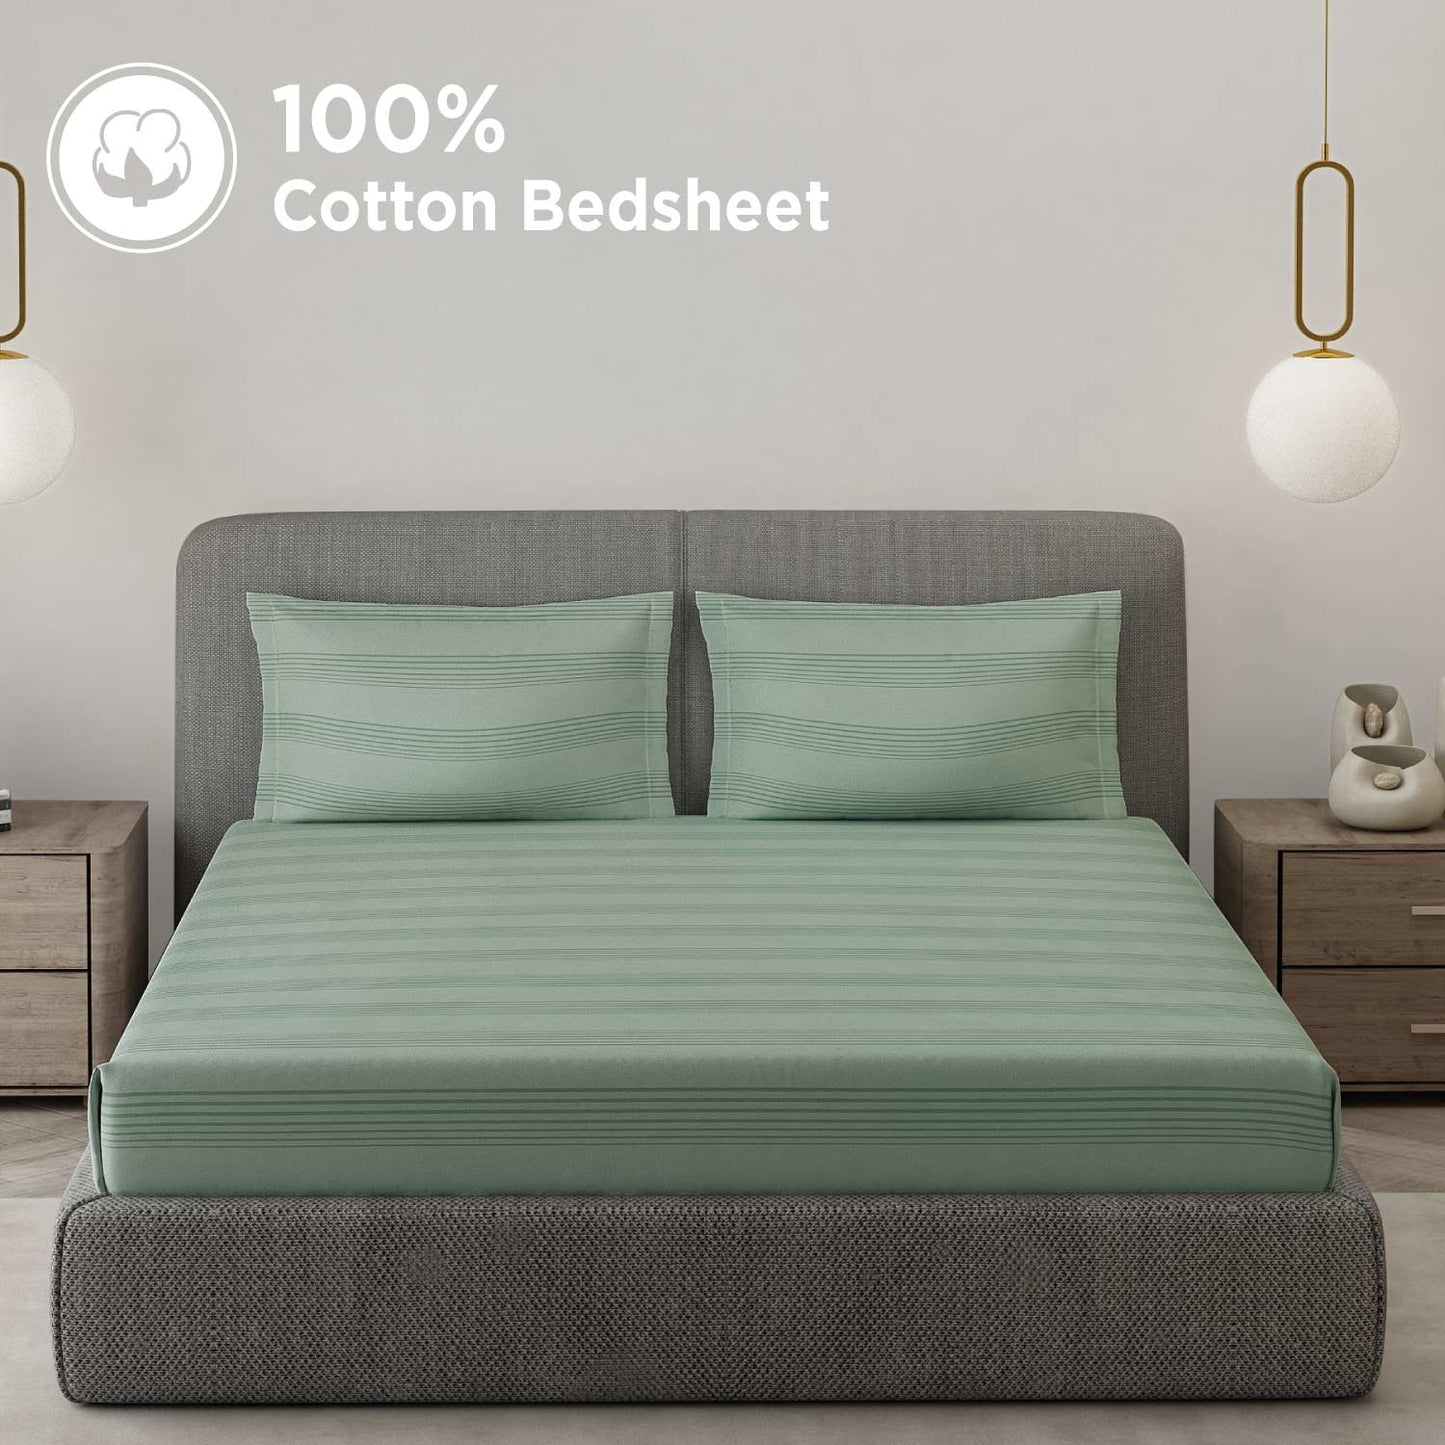 Premium Sateen Bedsheets